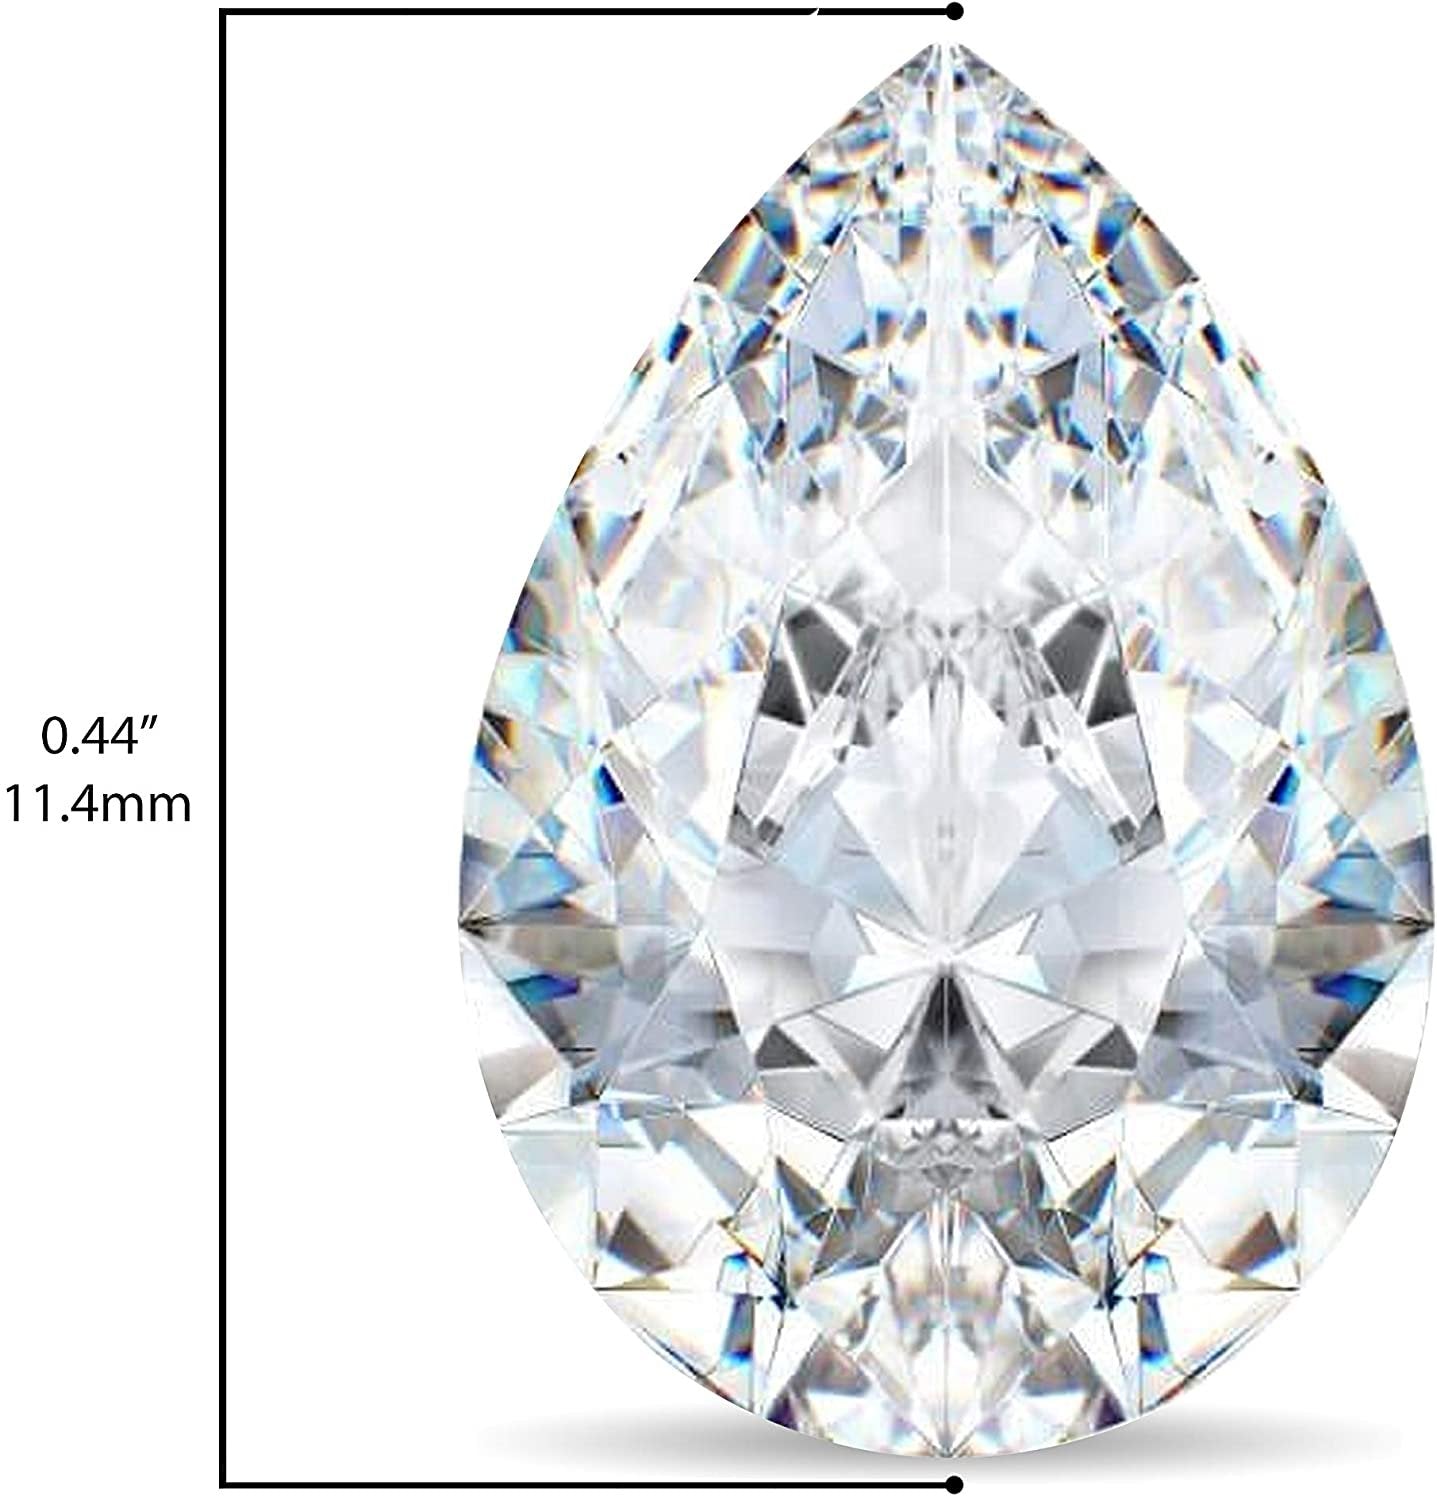 IGI Certified Loose 1/2 to 2.0 Carat Pear Cut Teardrop Shape Lab Created Diamond (G-H Color, VS1-VS2 Clarity) - Single Loose Stone